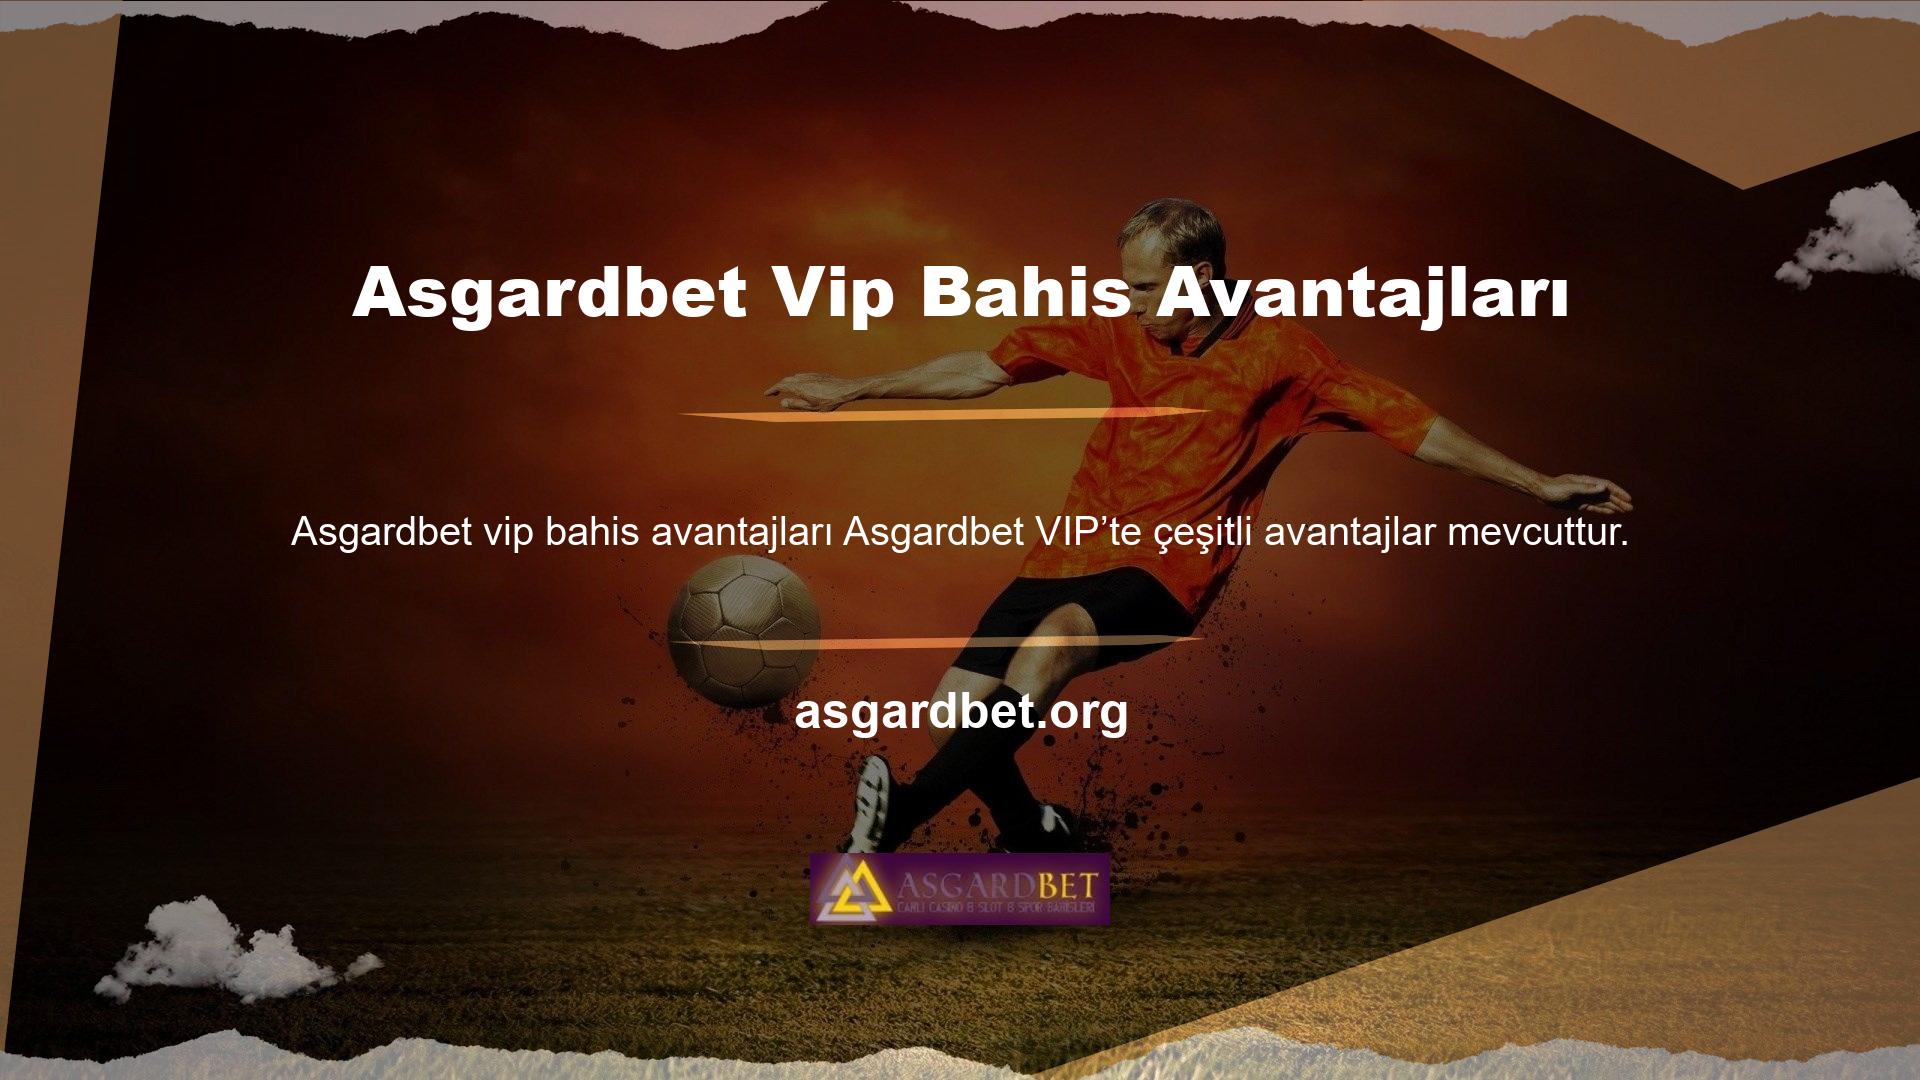 Asgardbet avantajlarından biri olarak ücretsiz Vip bahisleri mevcuttur